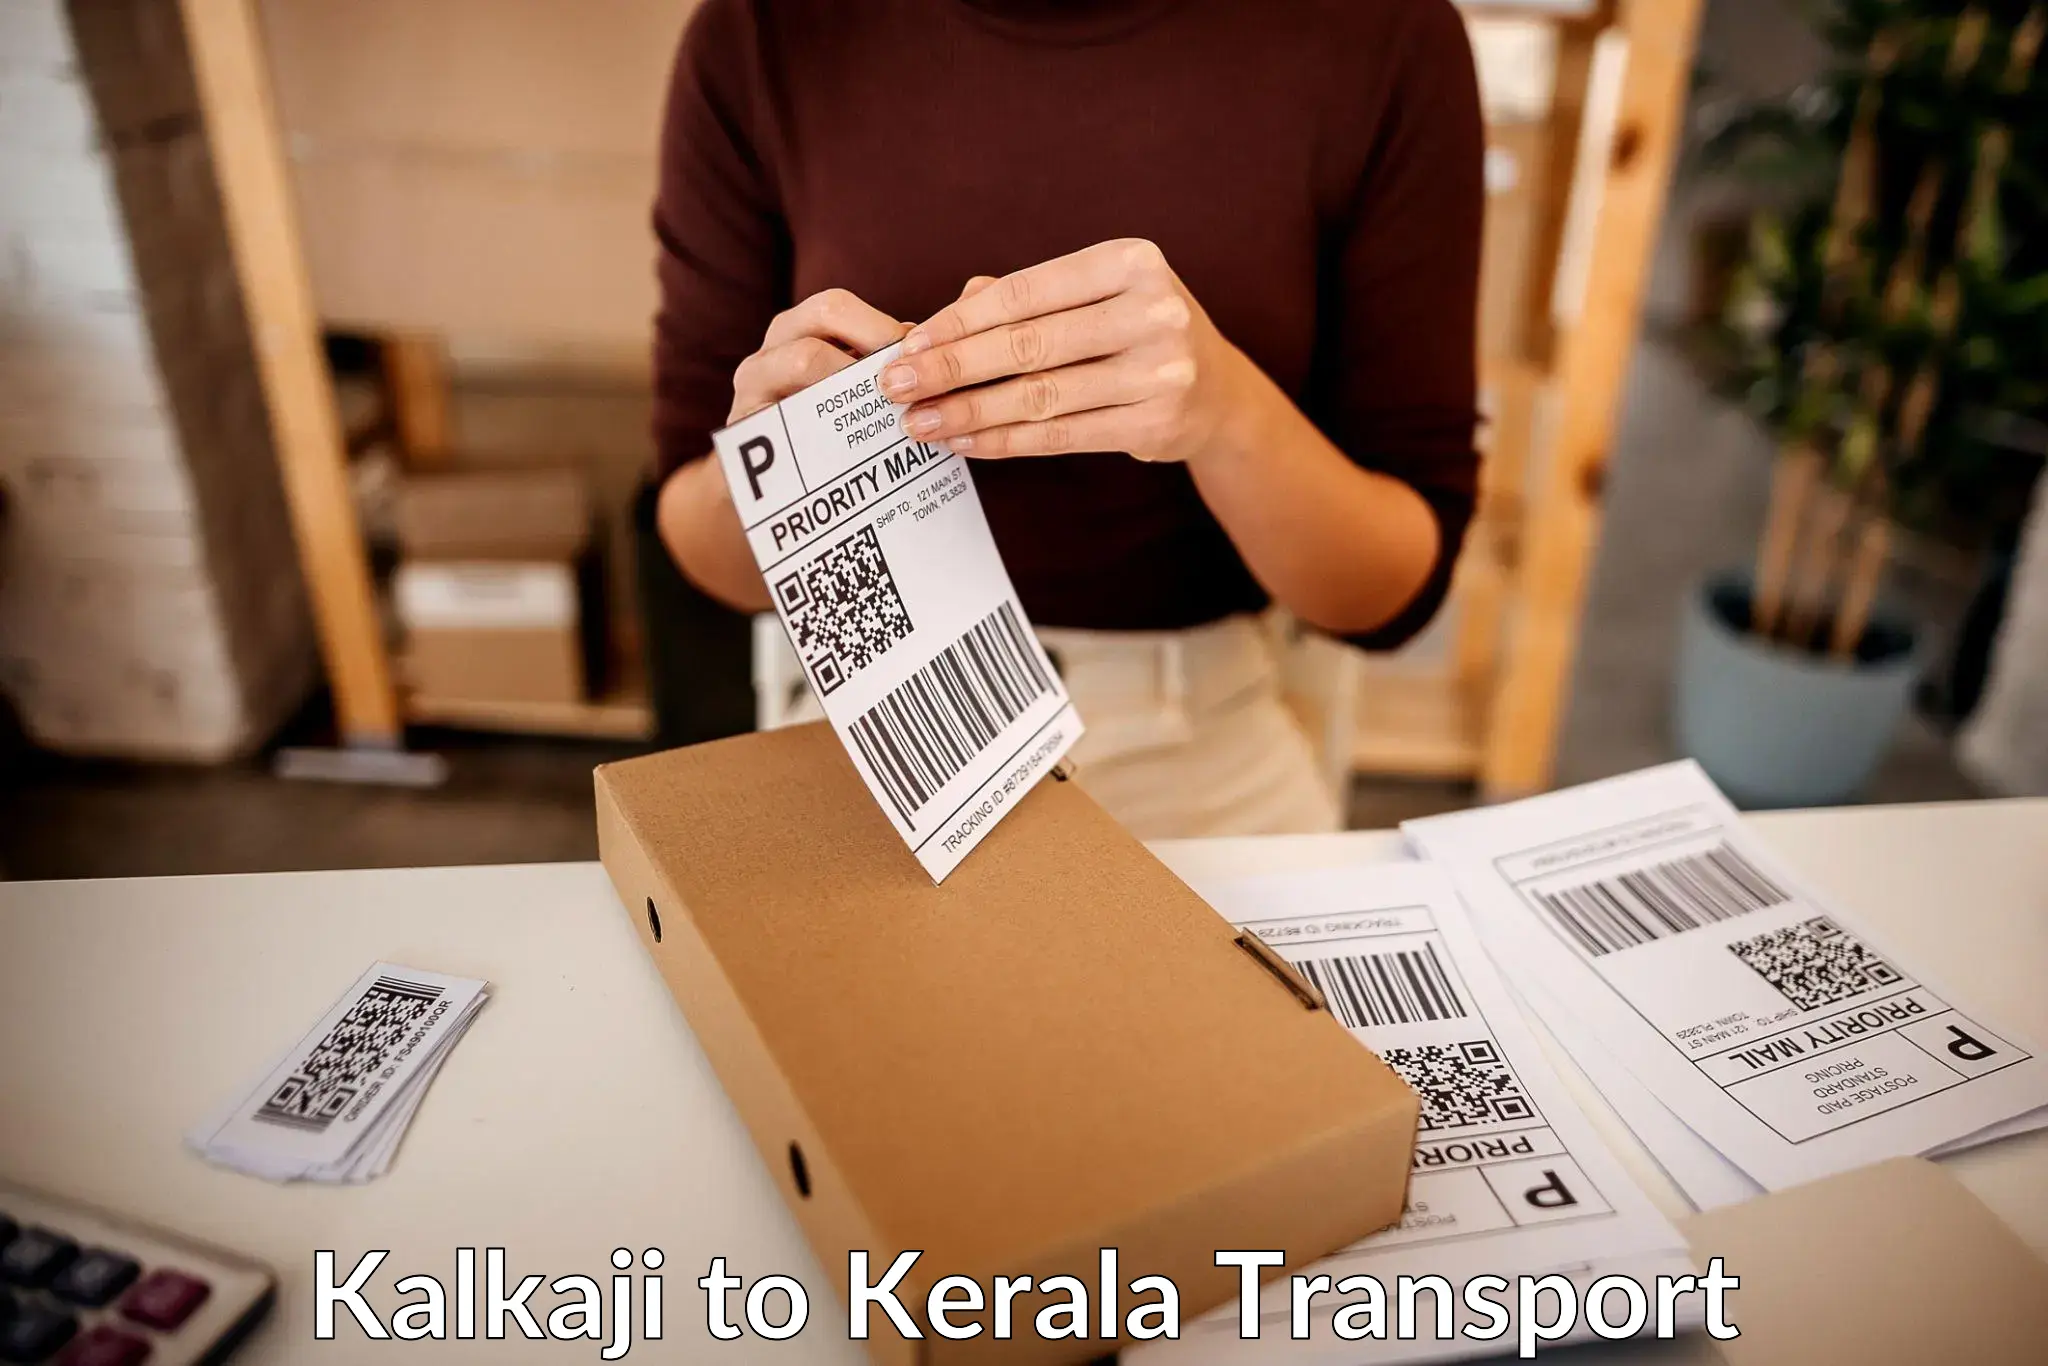 Domestic transport services in Kalkaji to Kottayam